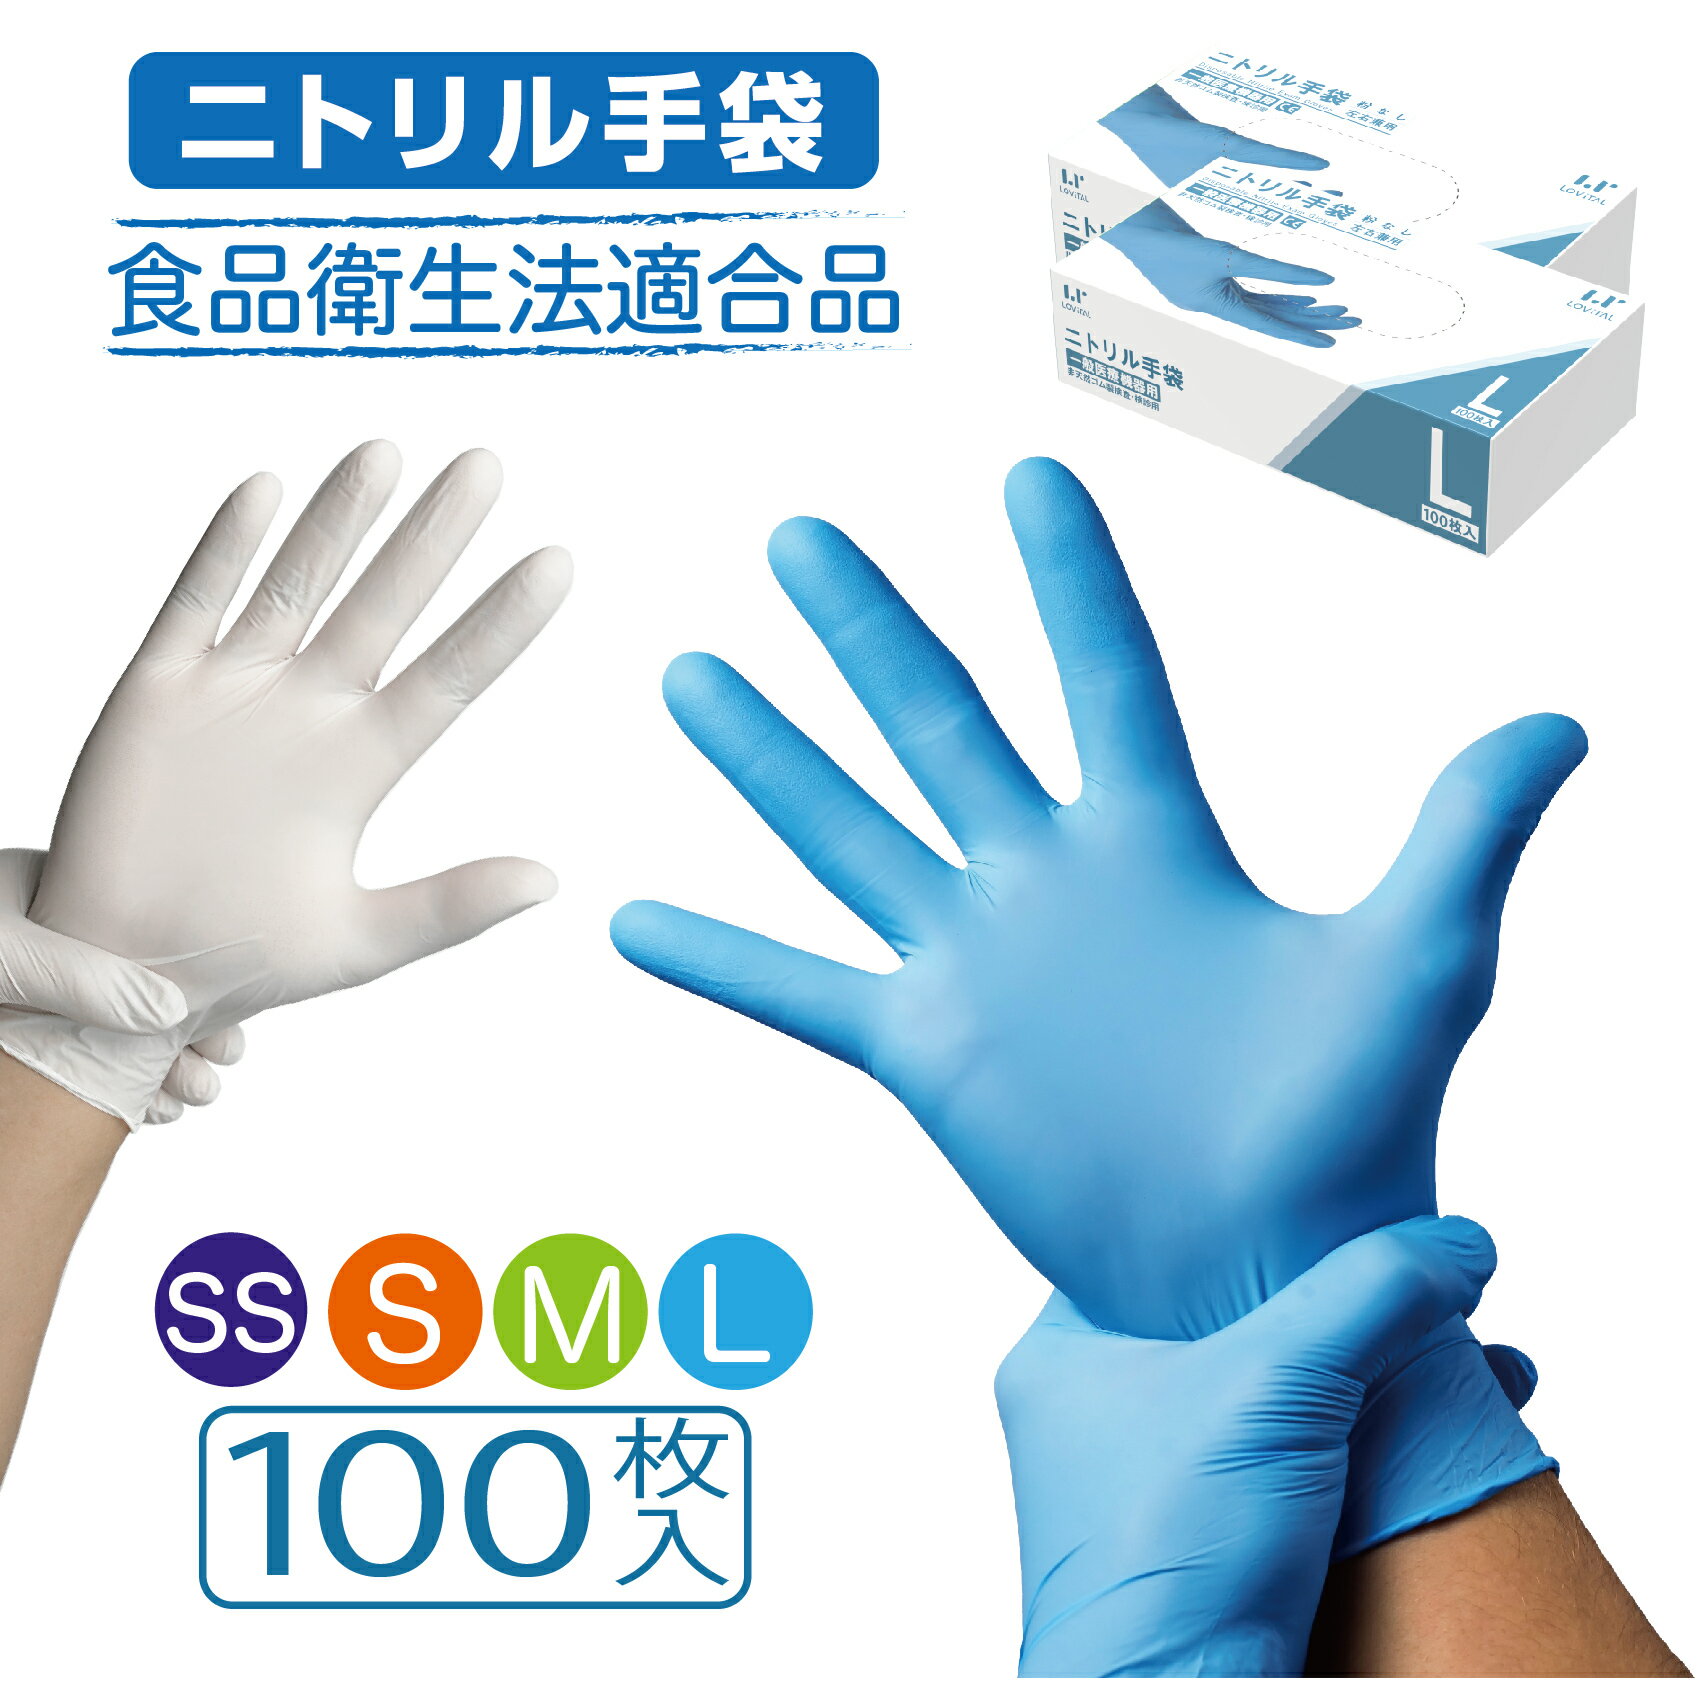 (まとめ) クラフトマン ポリエチレン手袋 L PGHK-03 1パック(200枚) 【×10セット】